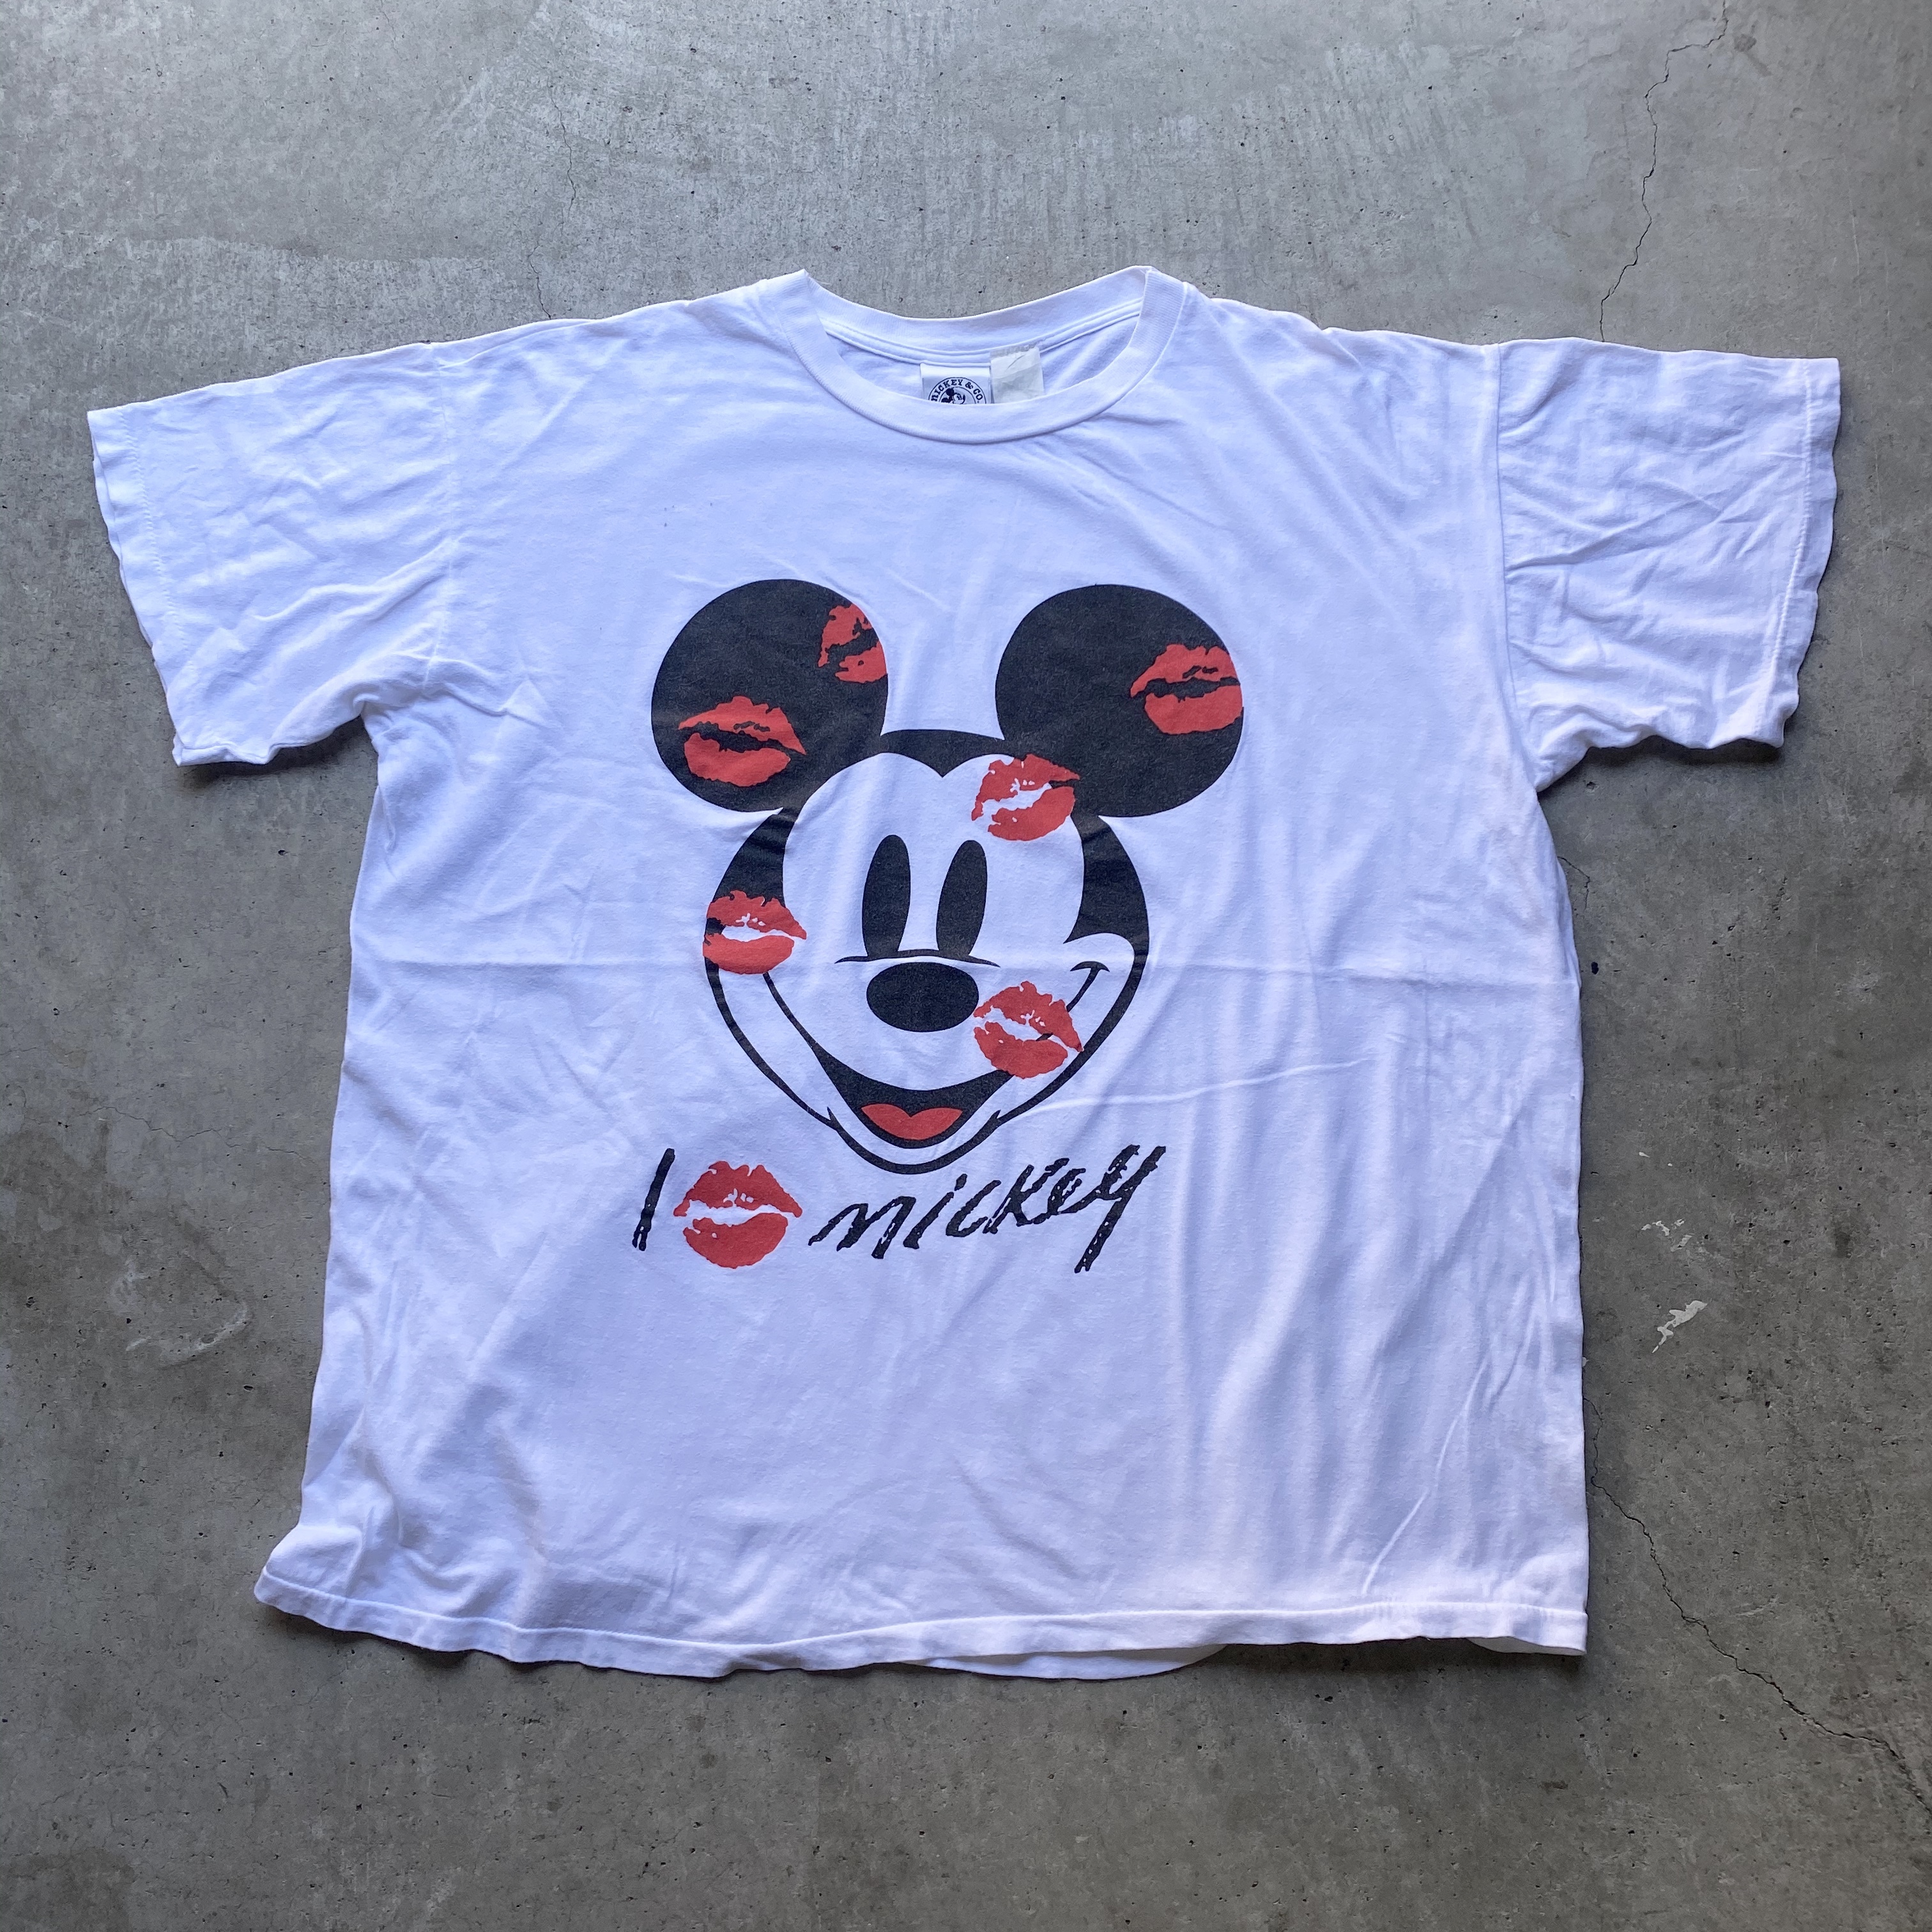 ビッグサイズ Micky Co Disney ディズニー Micky Mouse ミッキーマウス キスマーク プリントtシャツ キャラクターtシャツ メンズ4xl相当 レディース 古着 Tシャツ Cave 古着屋 公式 古着通販サイト